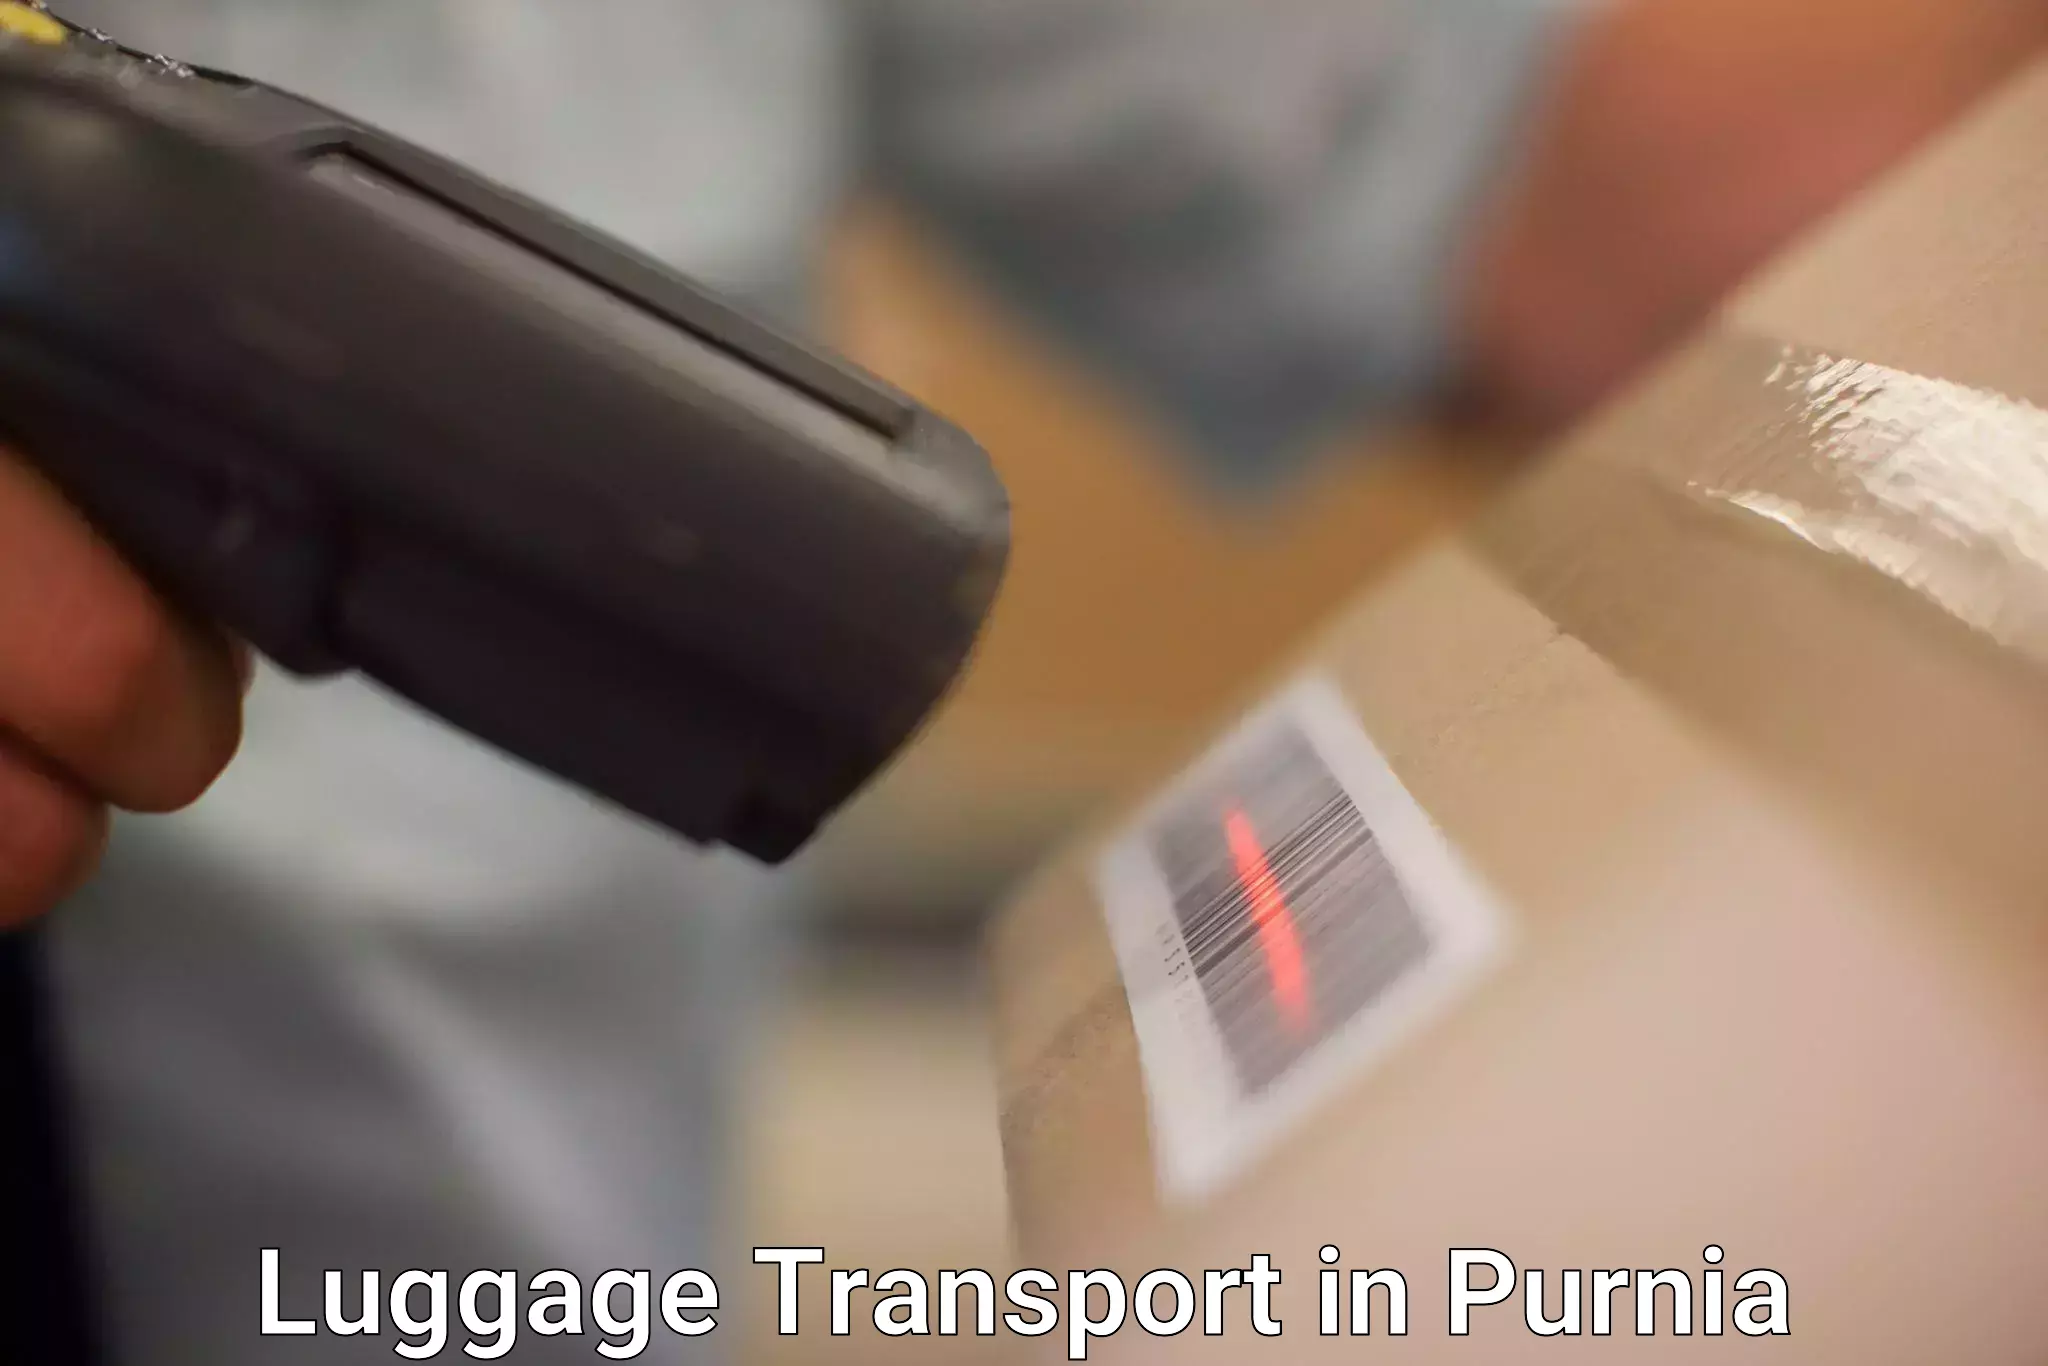 Urban luggage shipping in Purnia